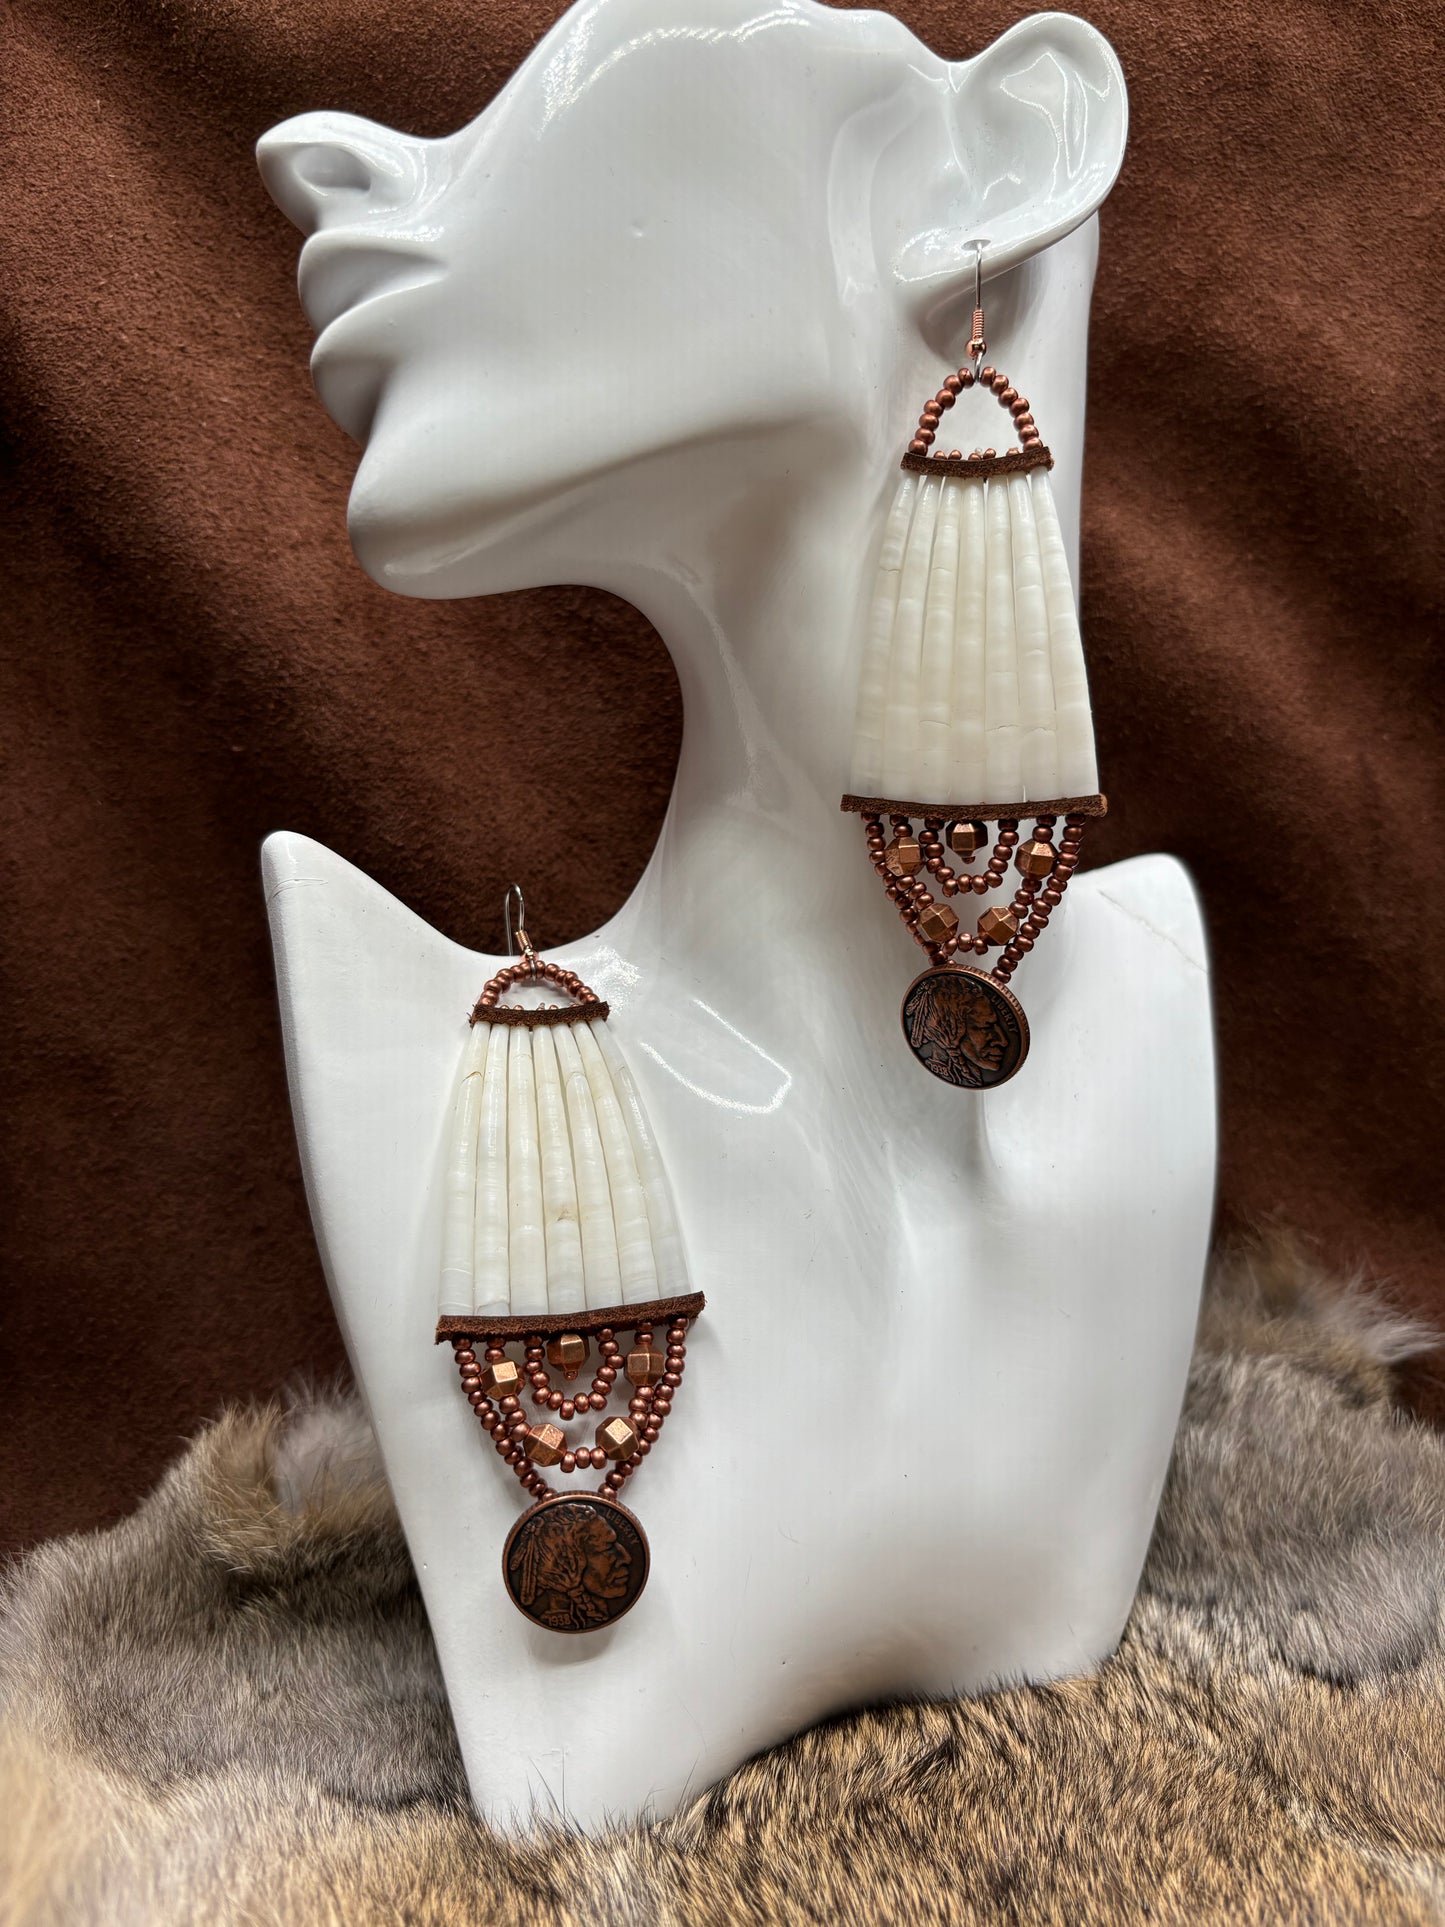 Chief Head Copper Coin Dentalium Earrings